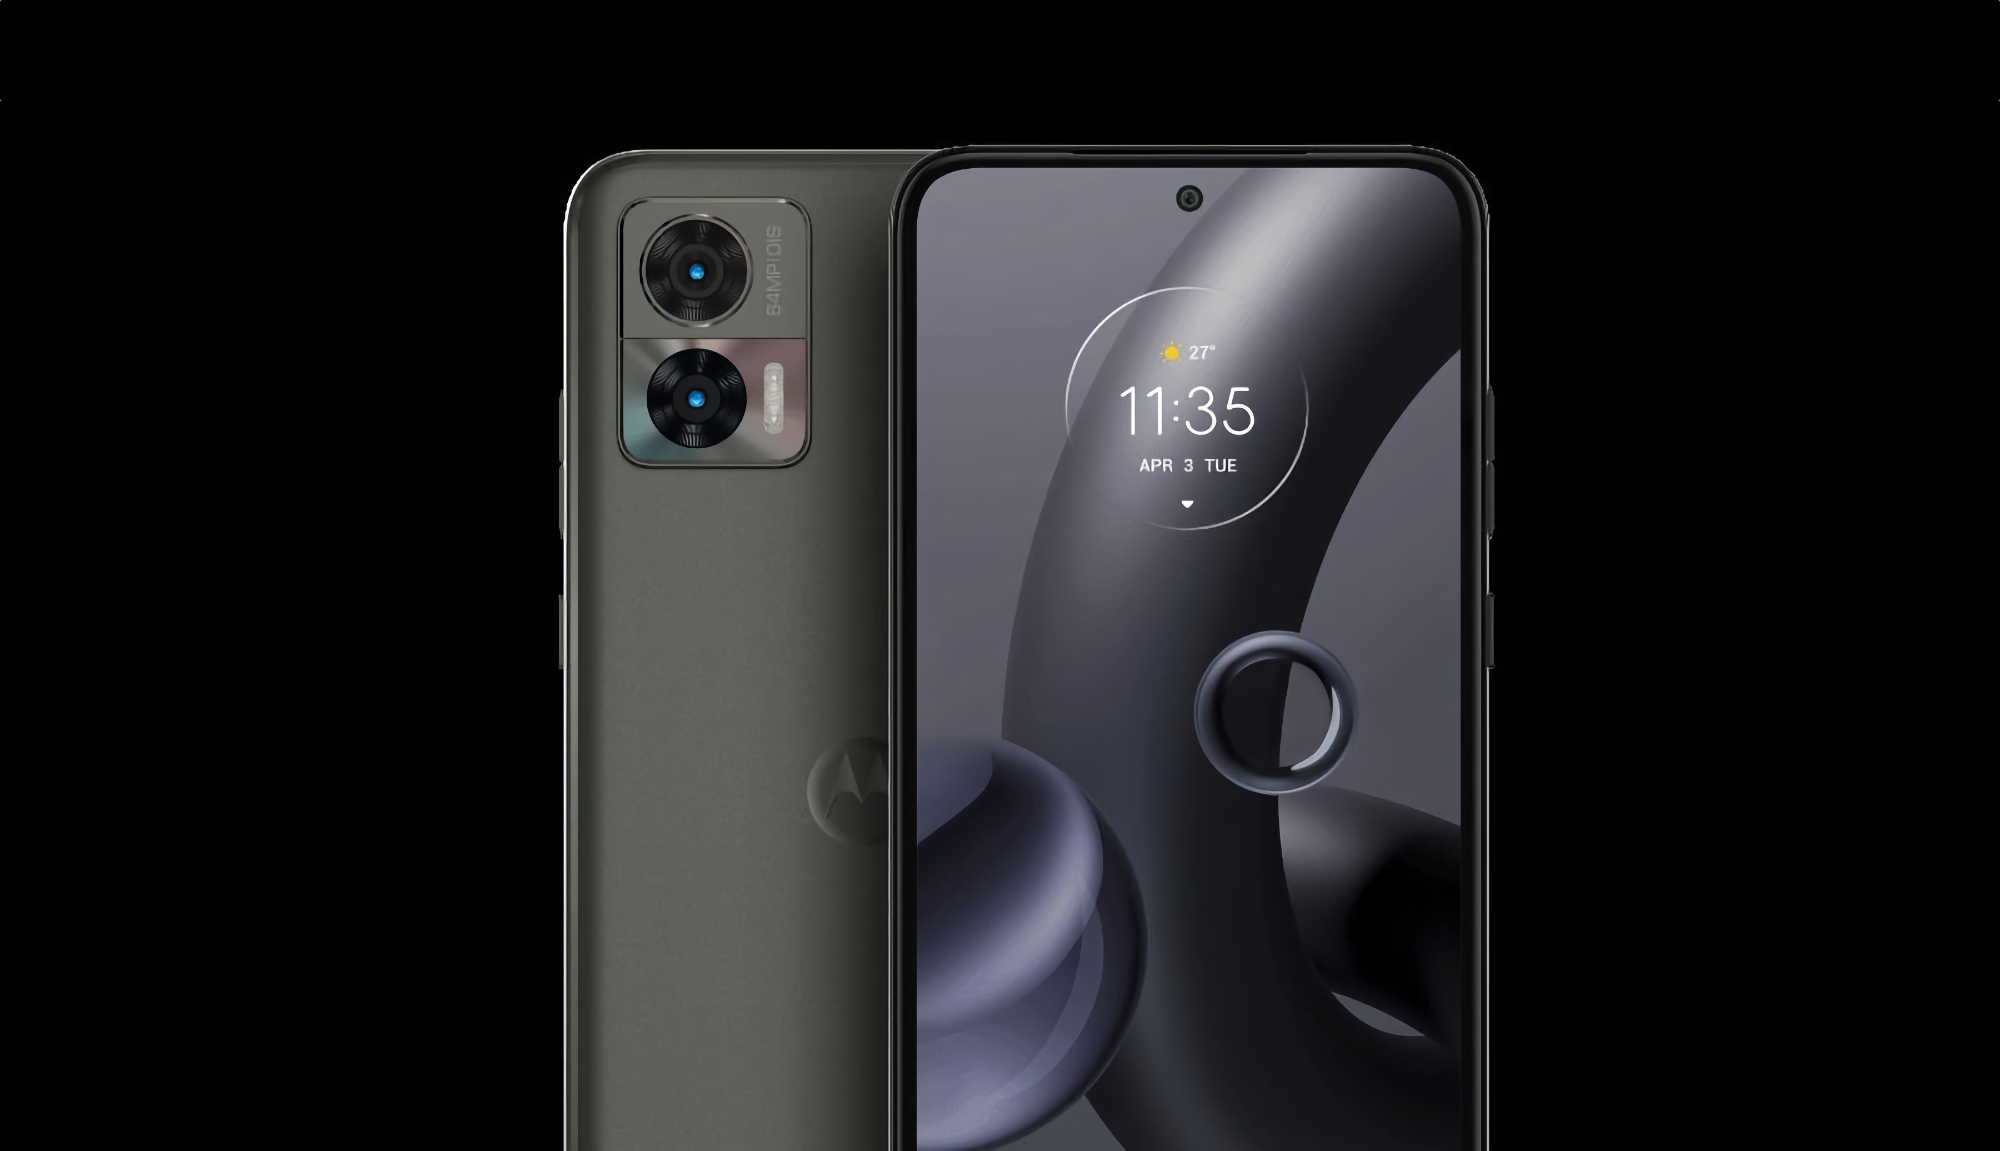 Tak będzie wyglądać Motorola Edge 30 Neo: smartfon z ekranem POLED 120 Hz, chipem Snapdragon 695 i aparatem 64 MP